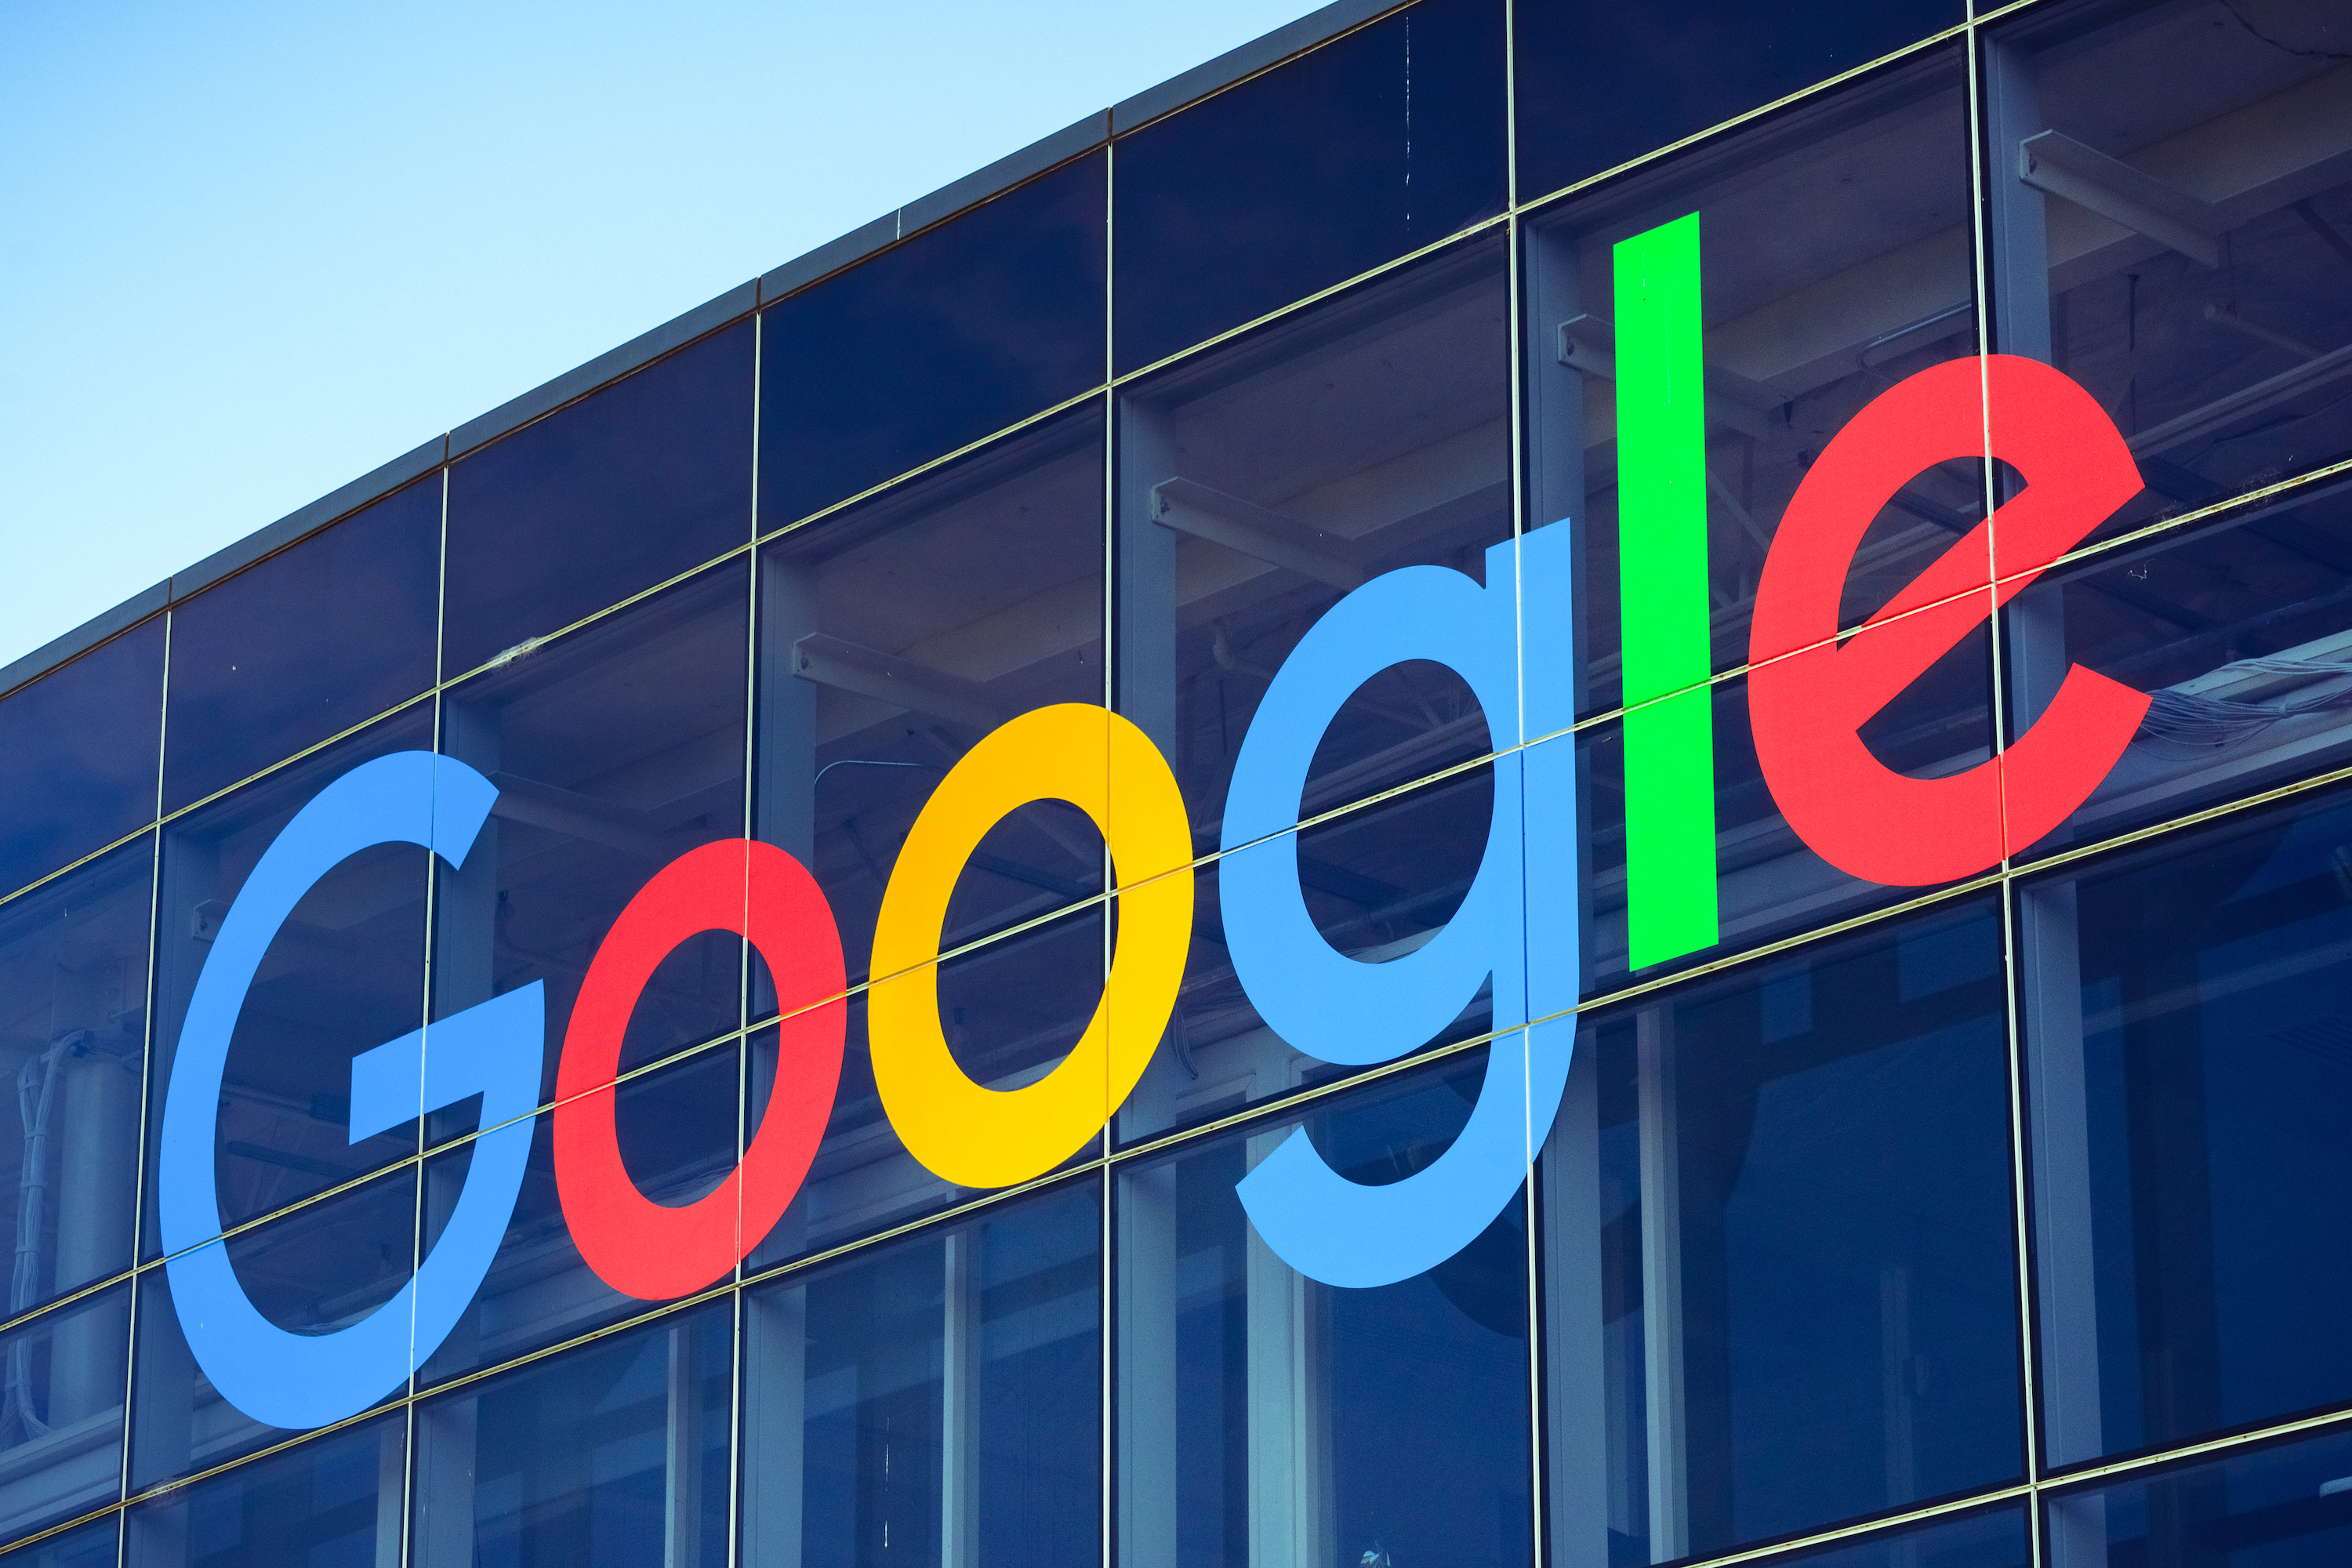 Гугл картинки. Гугл. Корпорация Google. Здание корпорации гугл. Американская компания Google.